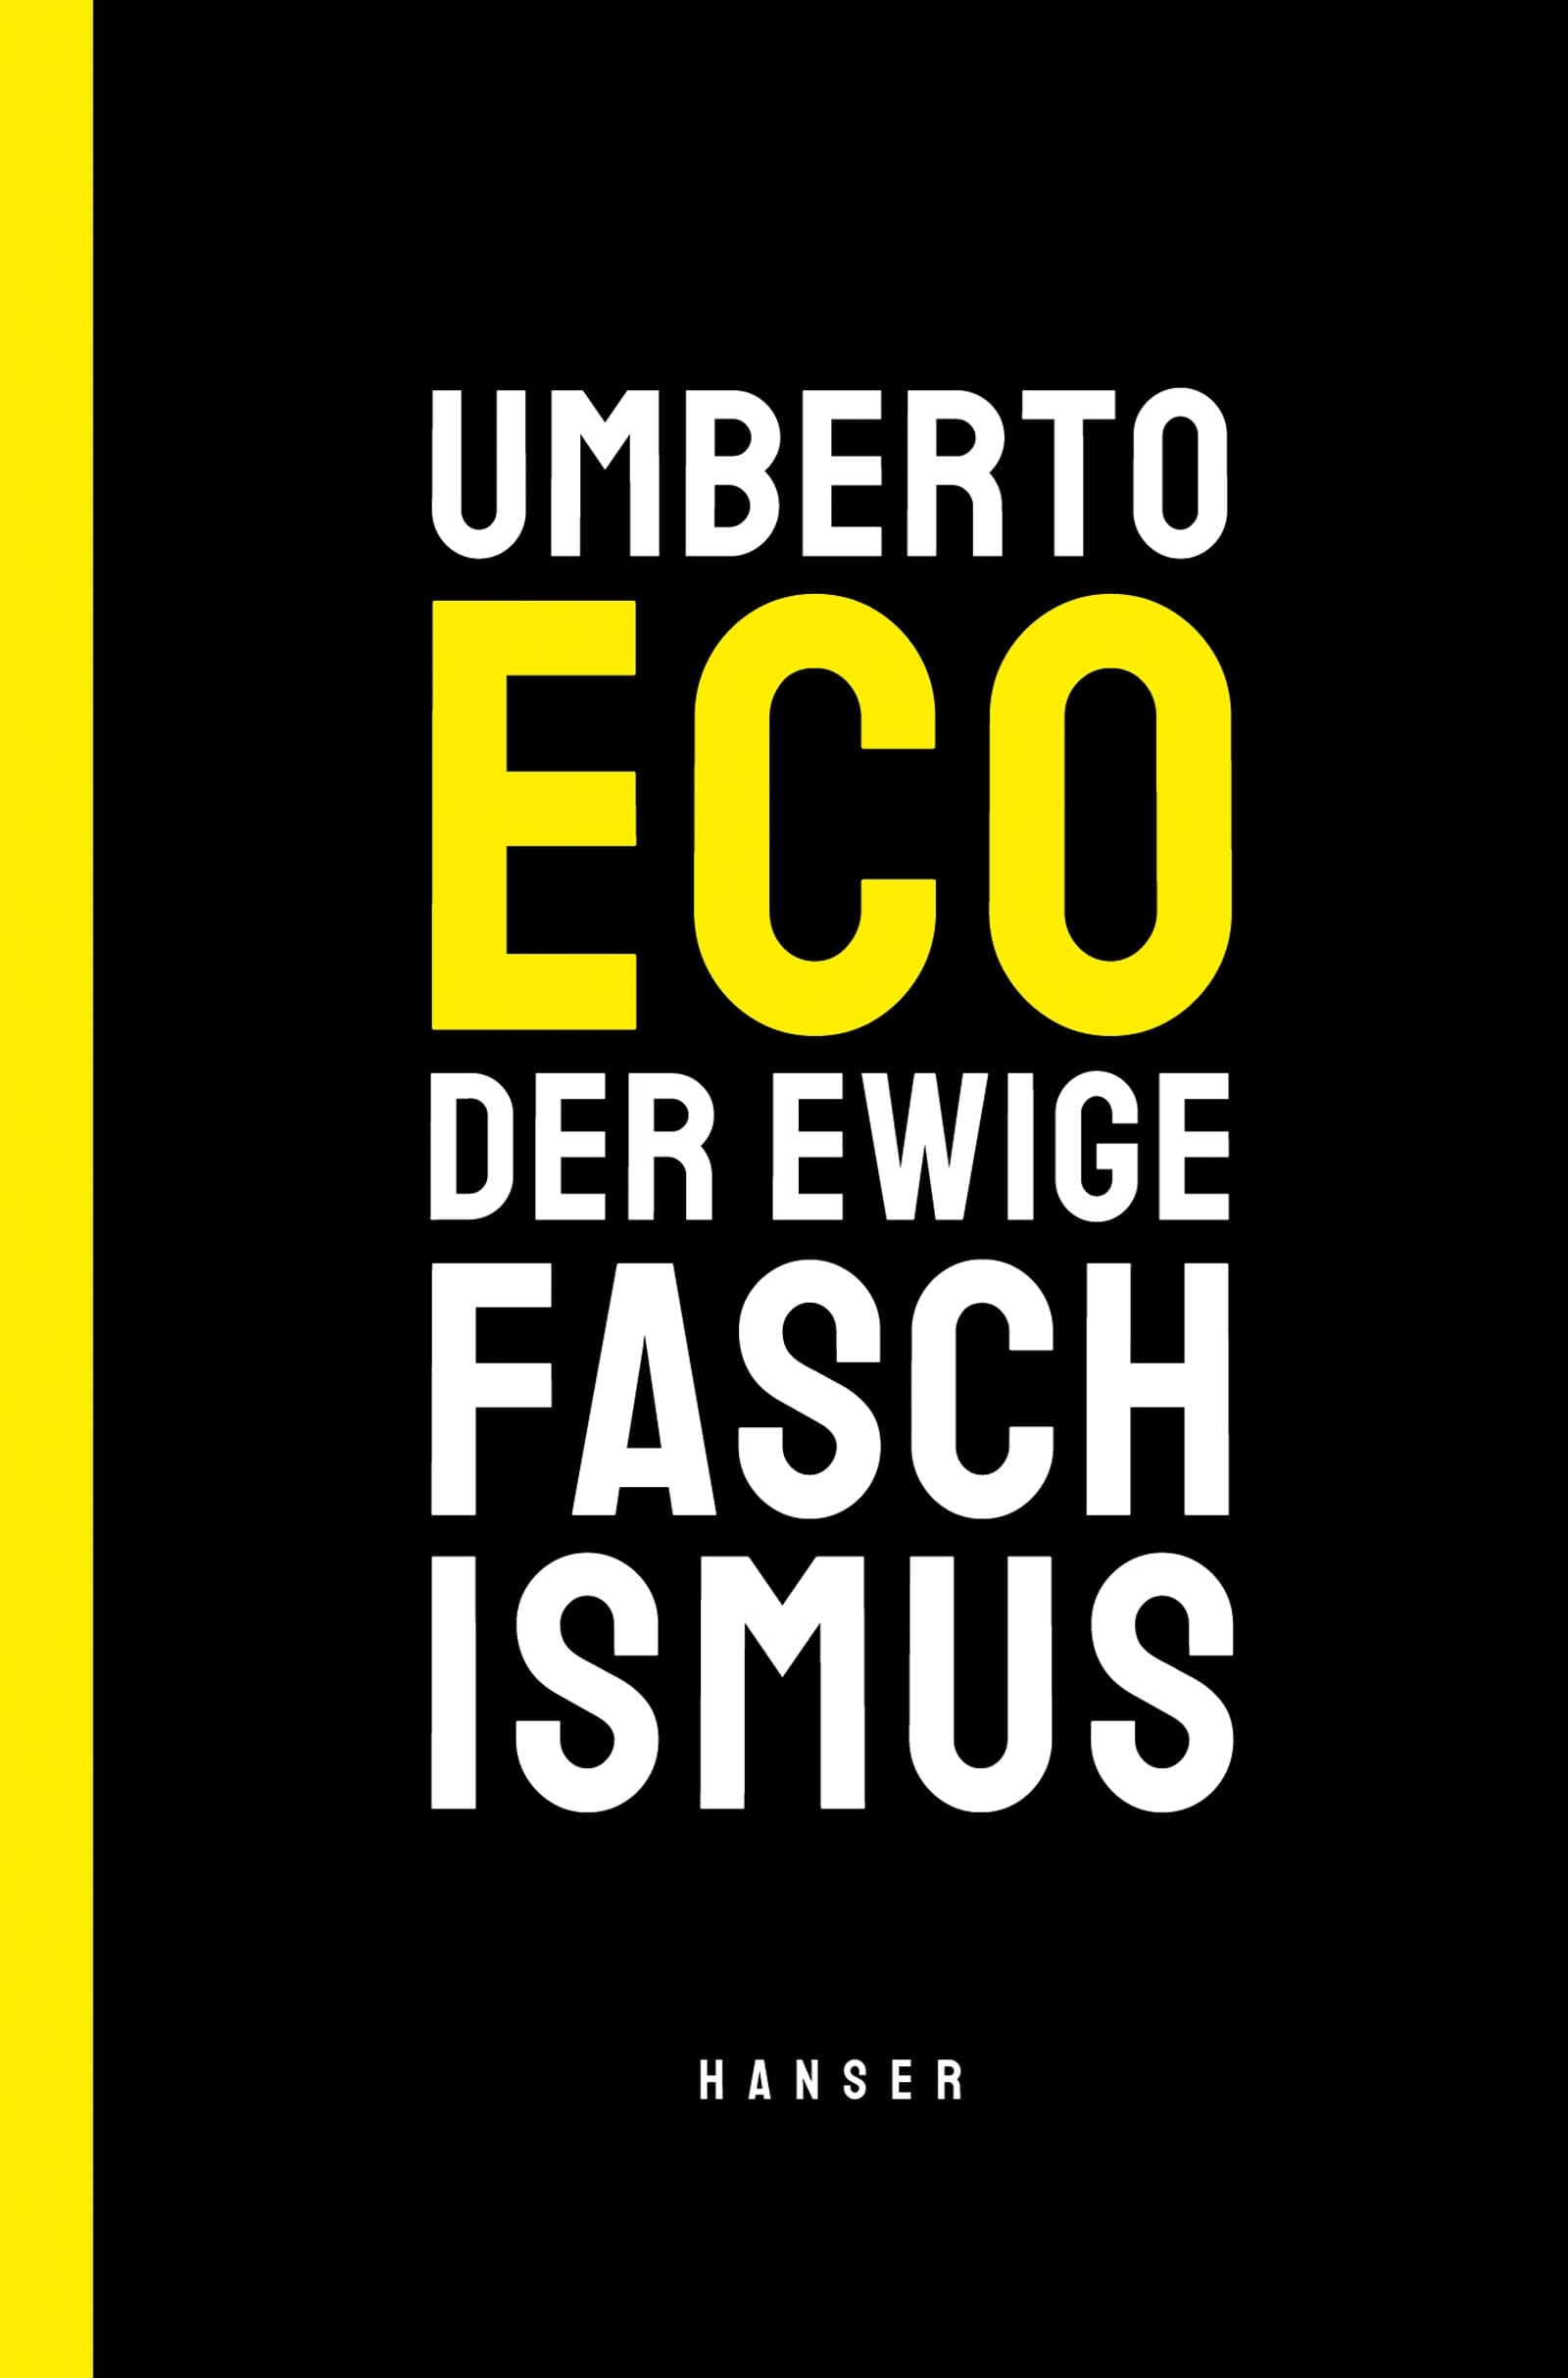 Der ewige Faschismus von Umberto Eco